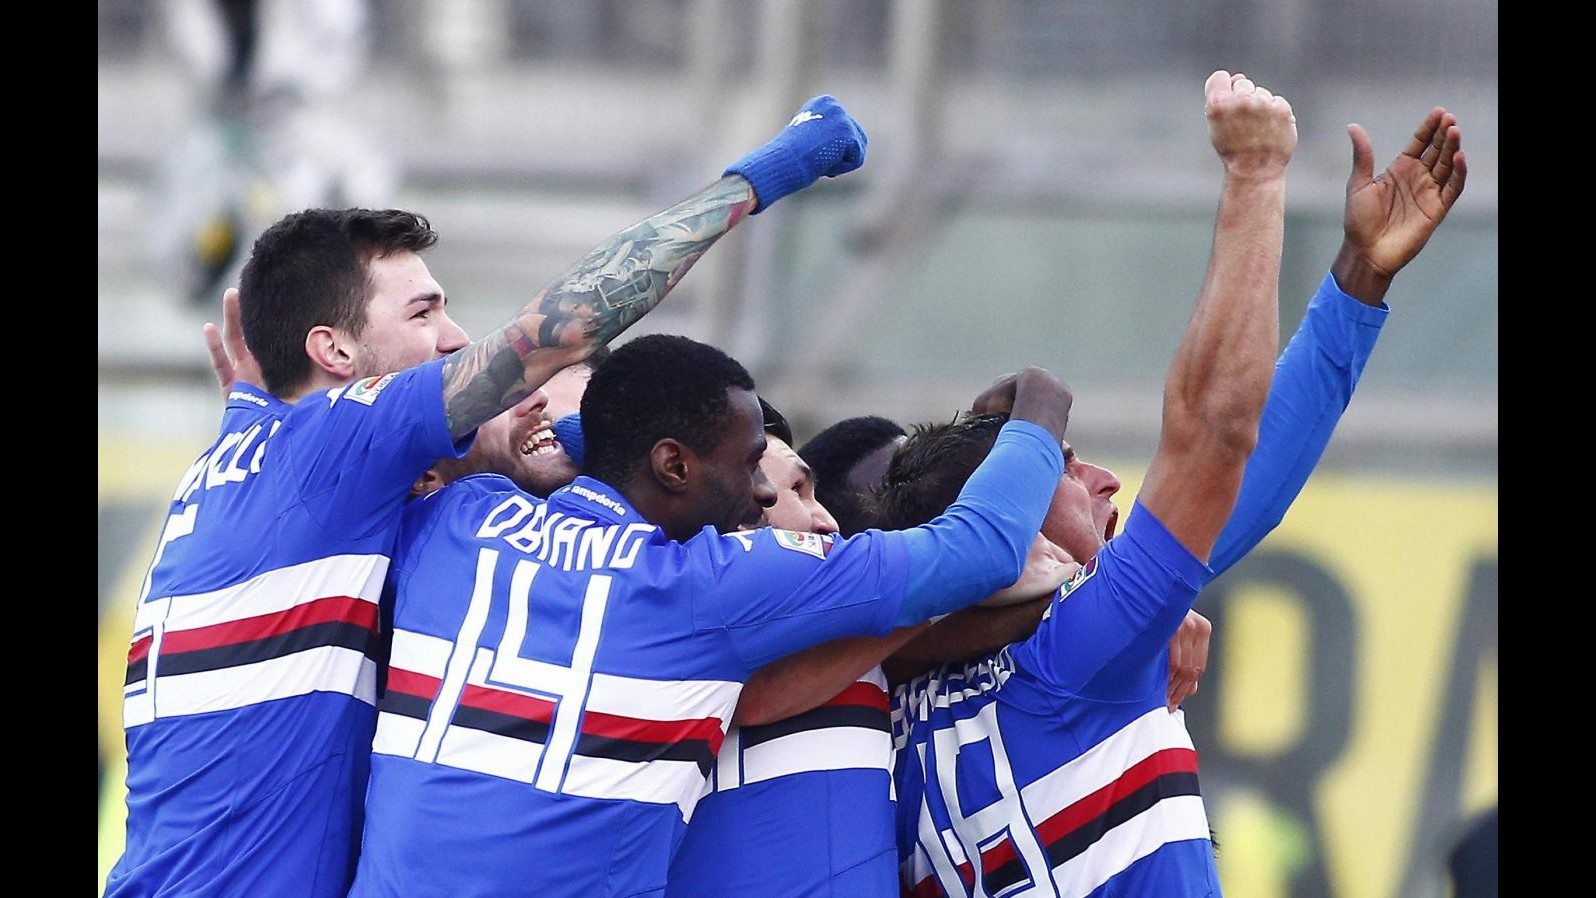 Serie A, Samp non si ferma e sale al 3° posto: Bergessio-Soriano stendono Parma